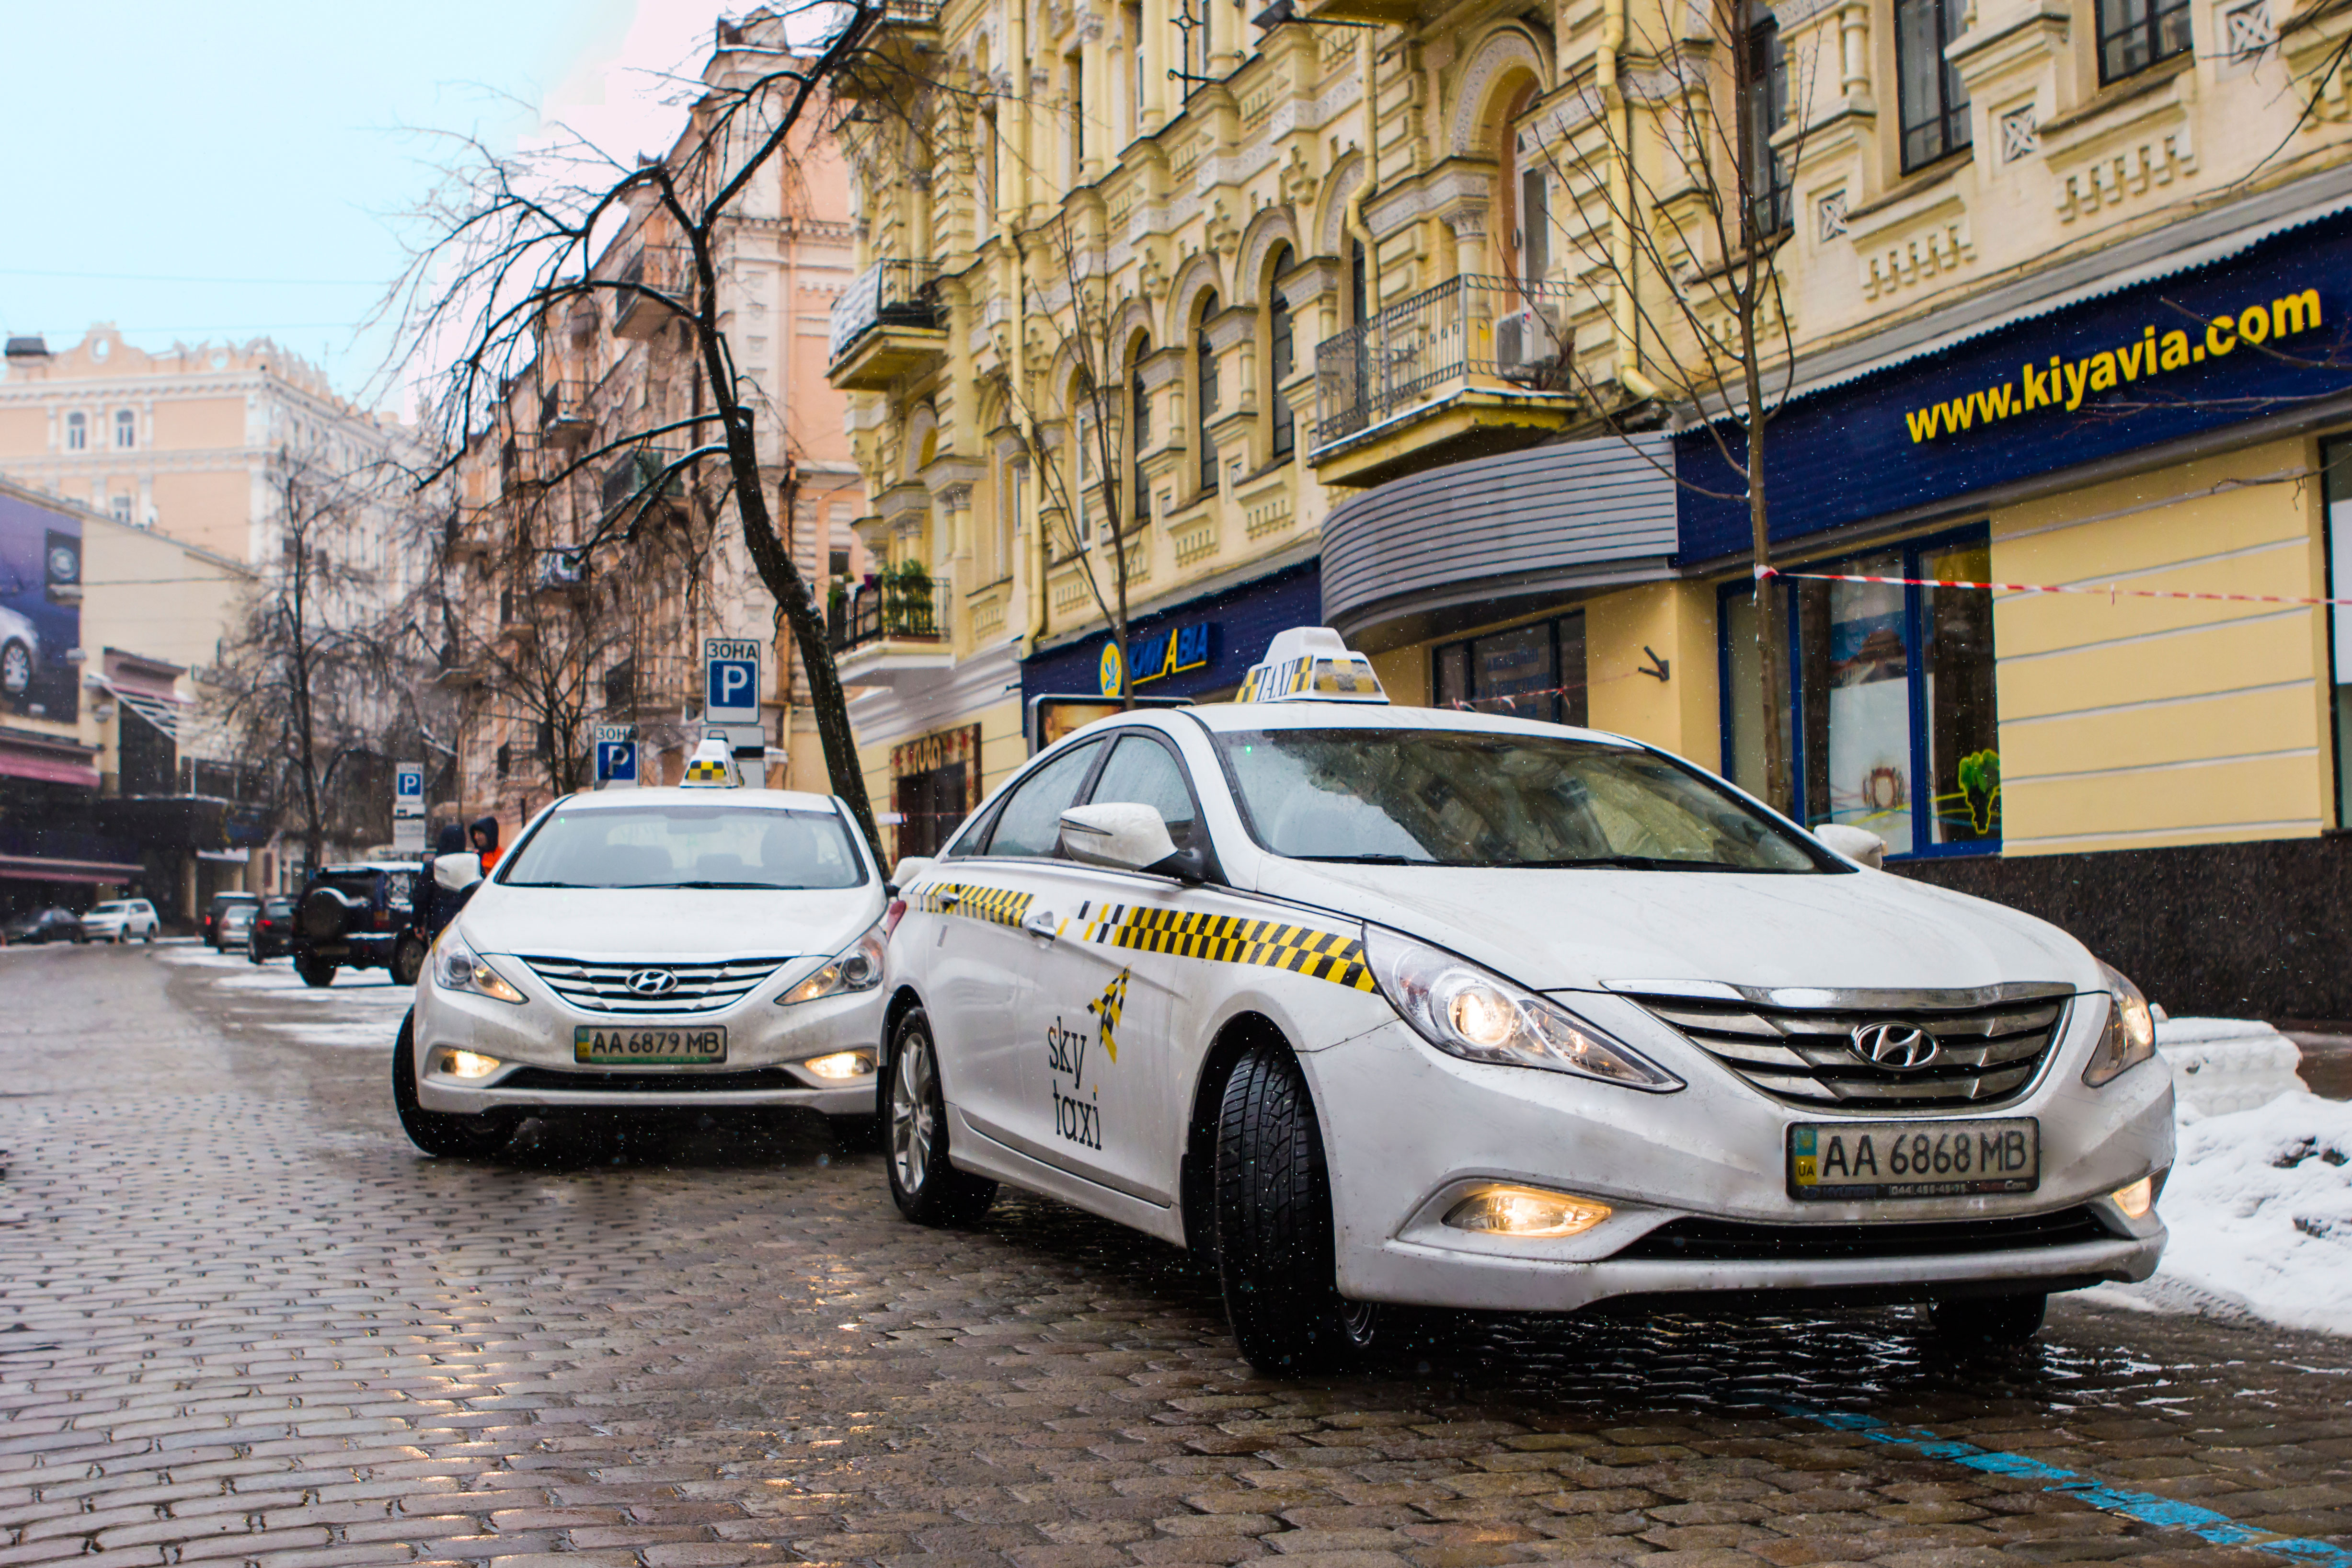 В министерстве инфраструктуры анонсировали начало работы Uber в Украине: новый сервис в разы снизит цены на такси  